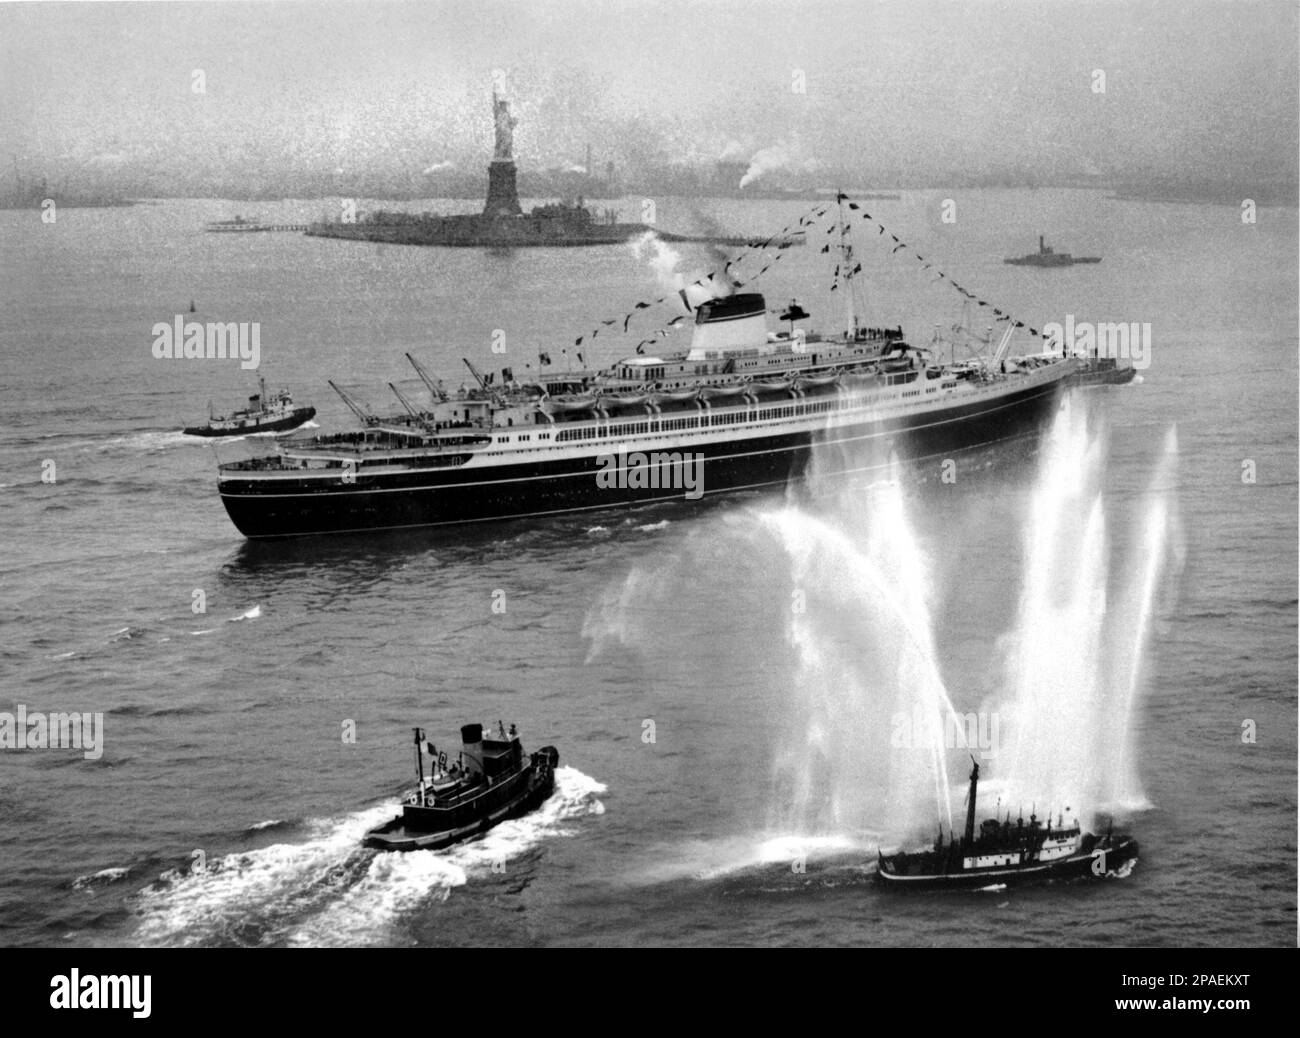 1953 , NEW YORK , USA : la SS Andrea Doria arriva a New York dopo è il primo viaggio record . L'Andrea Doria era un transatlantico per la linea italiana (Società di navigazione Italia), portabile a Genova. Prende il nome dall'ammiraglio genovese Andrea Doria del 16th° secolo. Lanciata il 16 giugno 1951, la nave ha intrapreso il suo primo viaggio il 14 gennaio 1953 . Il 25 luglio 1956, mentre navigava al largo della costa di Nantucket, Massachusetts, diretta a New York City, l'Andrea Doria si scontrò con la SS Stoccolma della linea Svedese-americana in quella che sarebbe diventata una delle più famose della storia Foto Stock